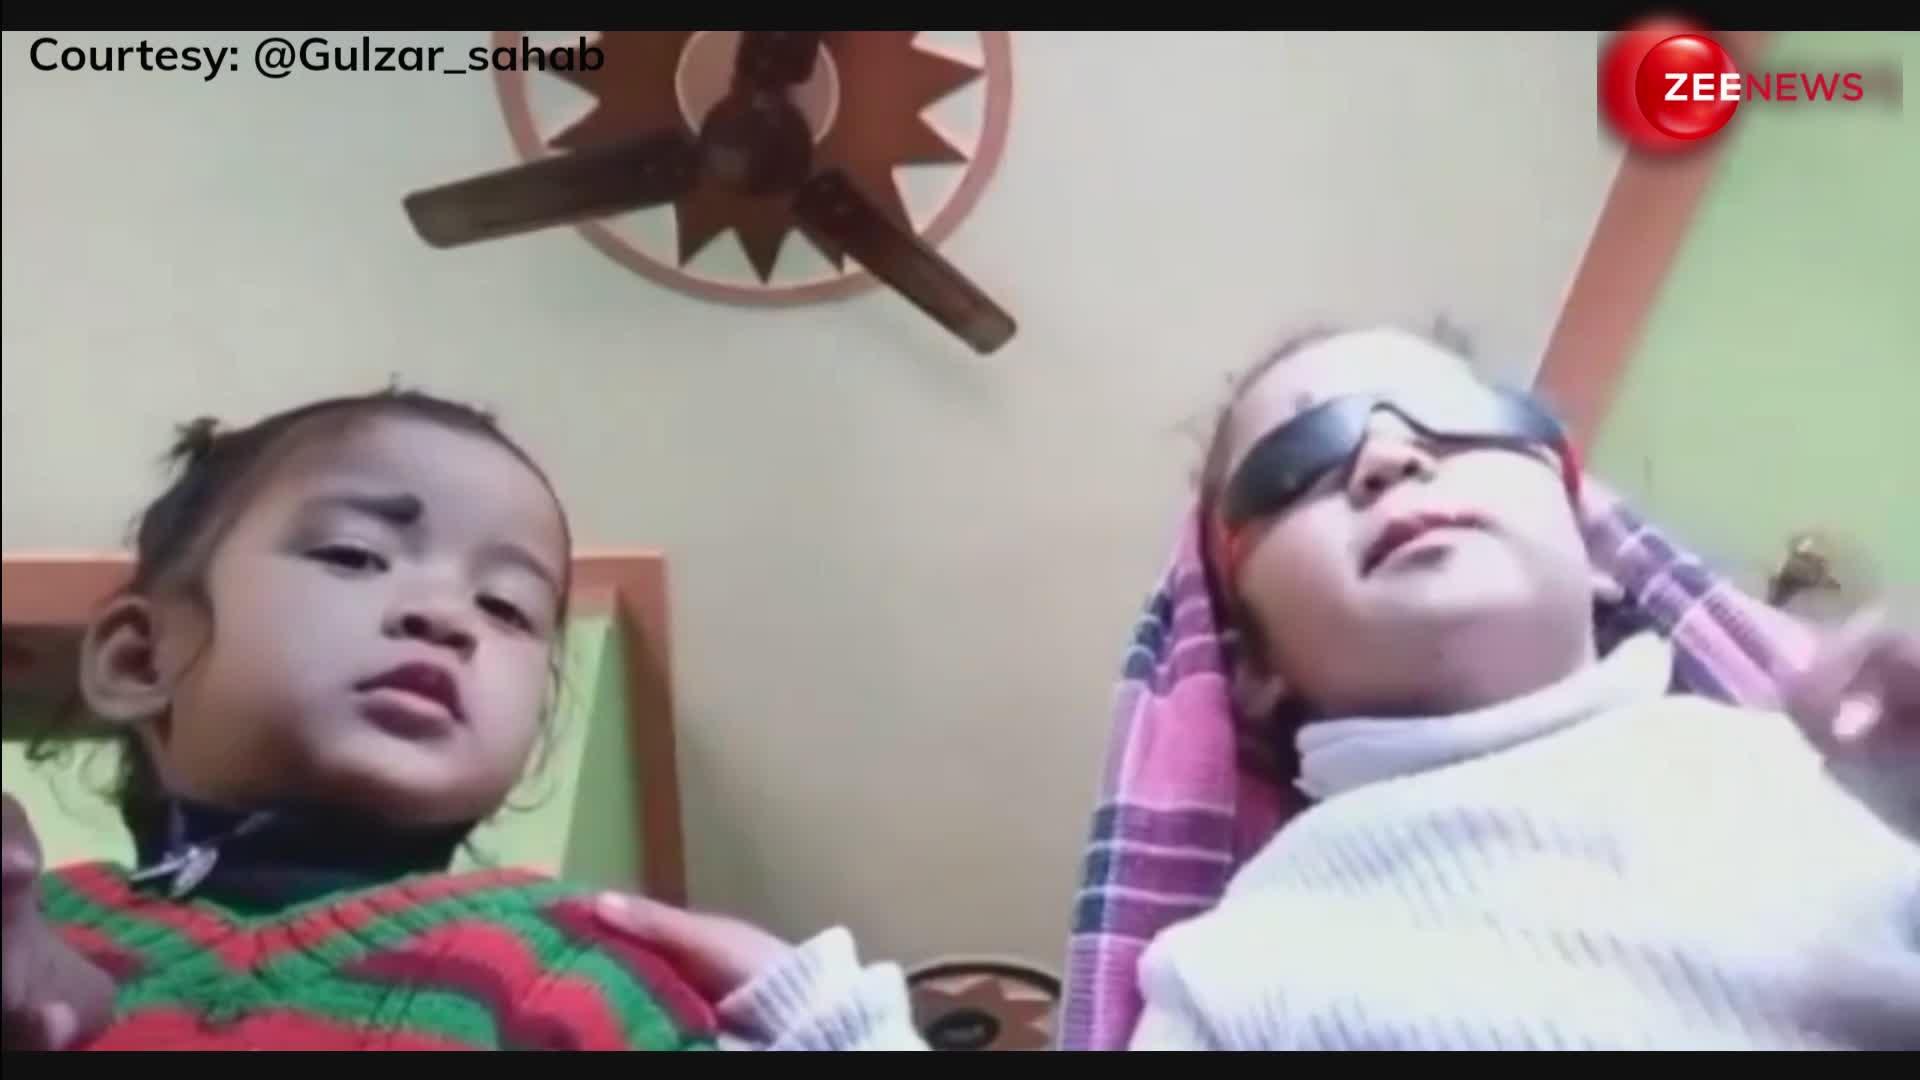 काव्या-करिश्मा से मिले क्या! 4 साल की बच्चियों का क्यूट Vlog देख लोग बोले- 'किसी की नजर न लगे'